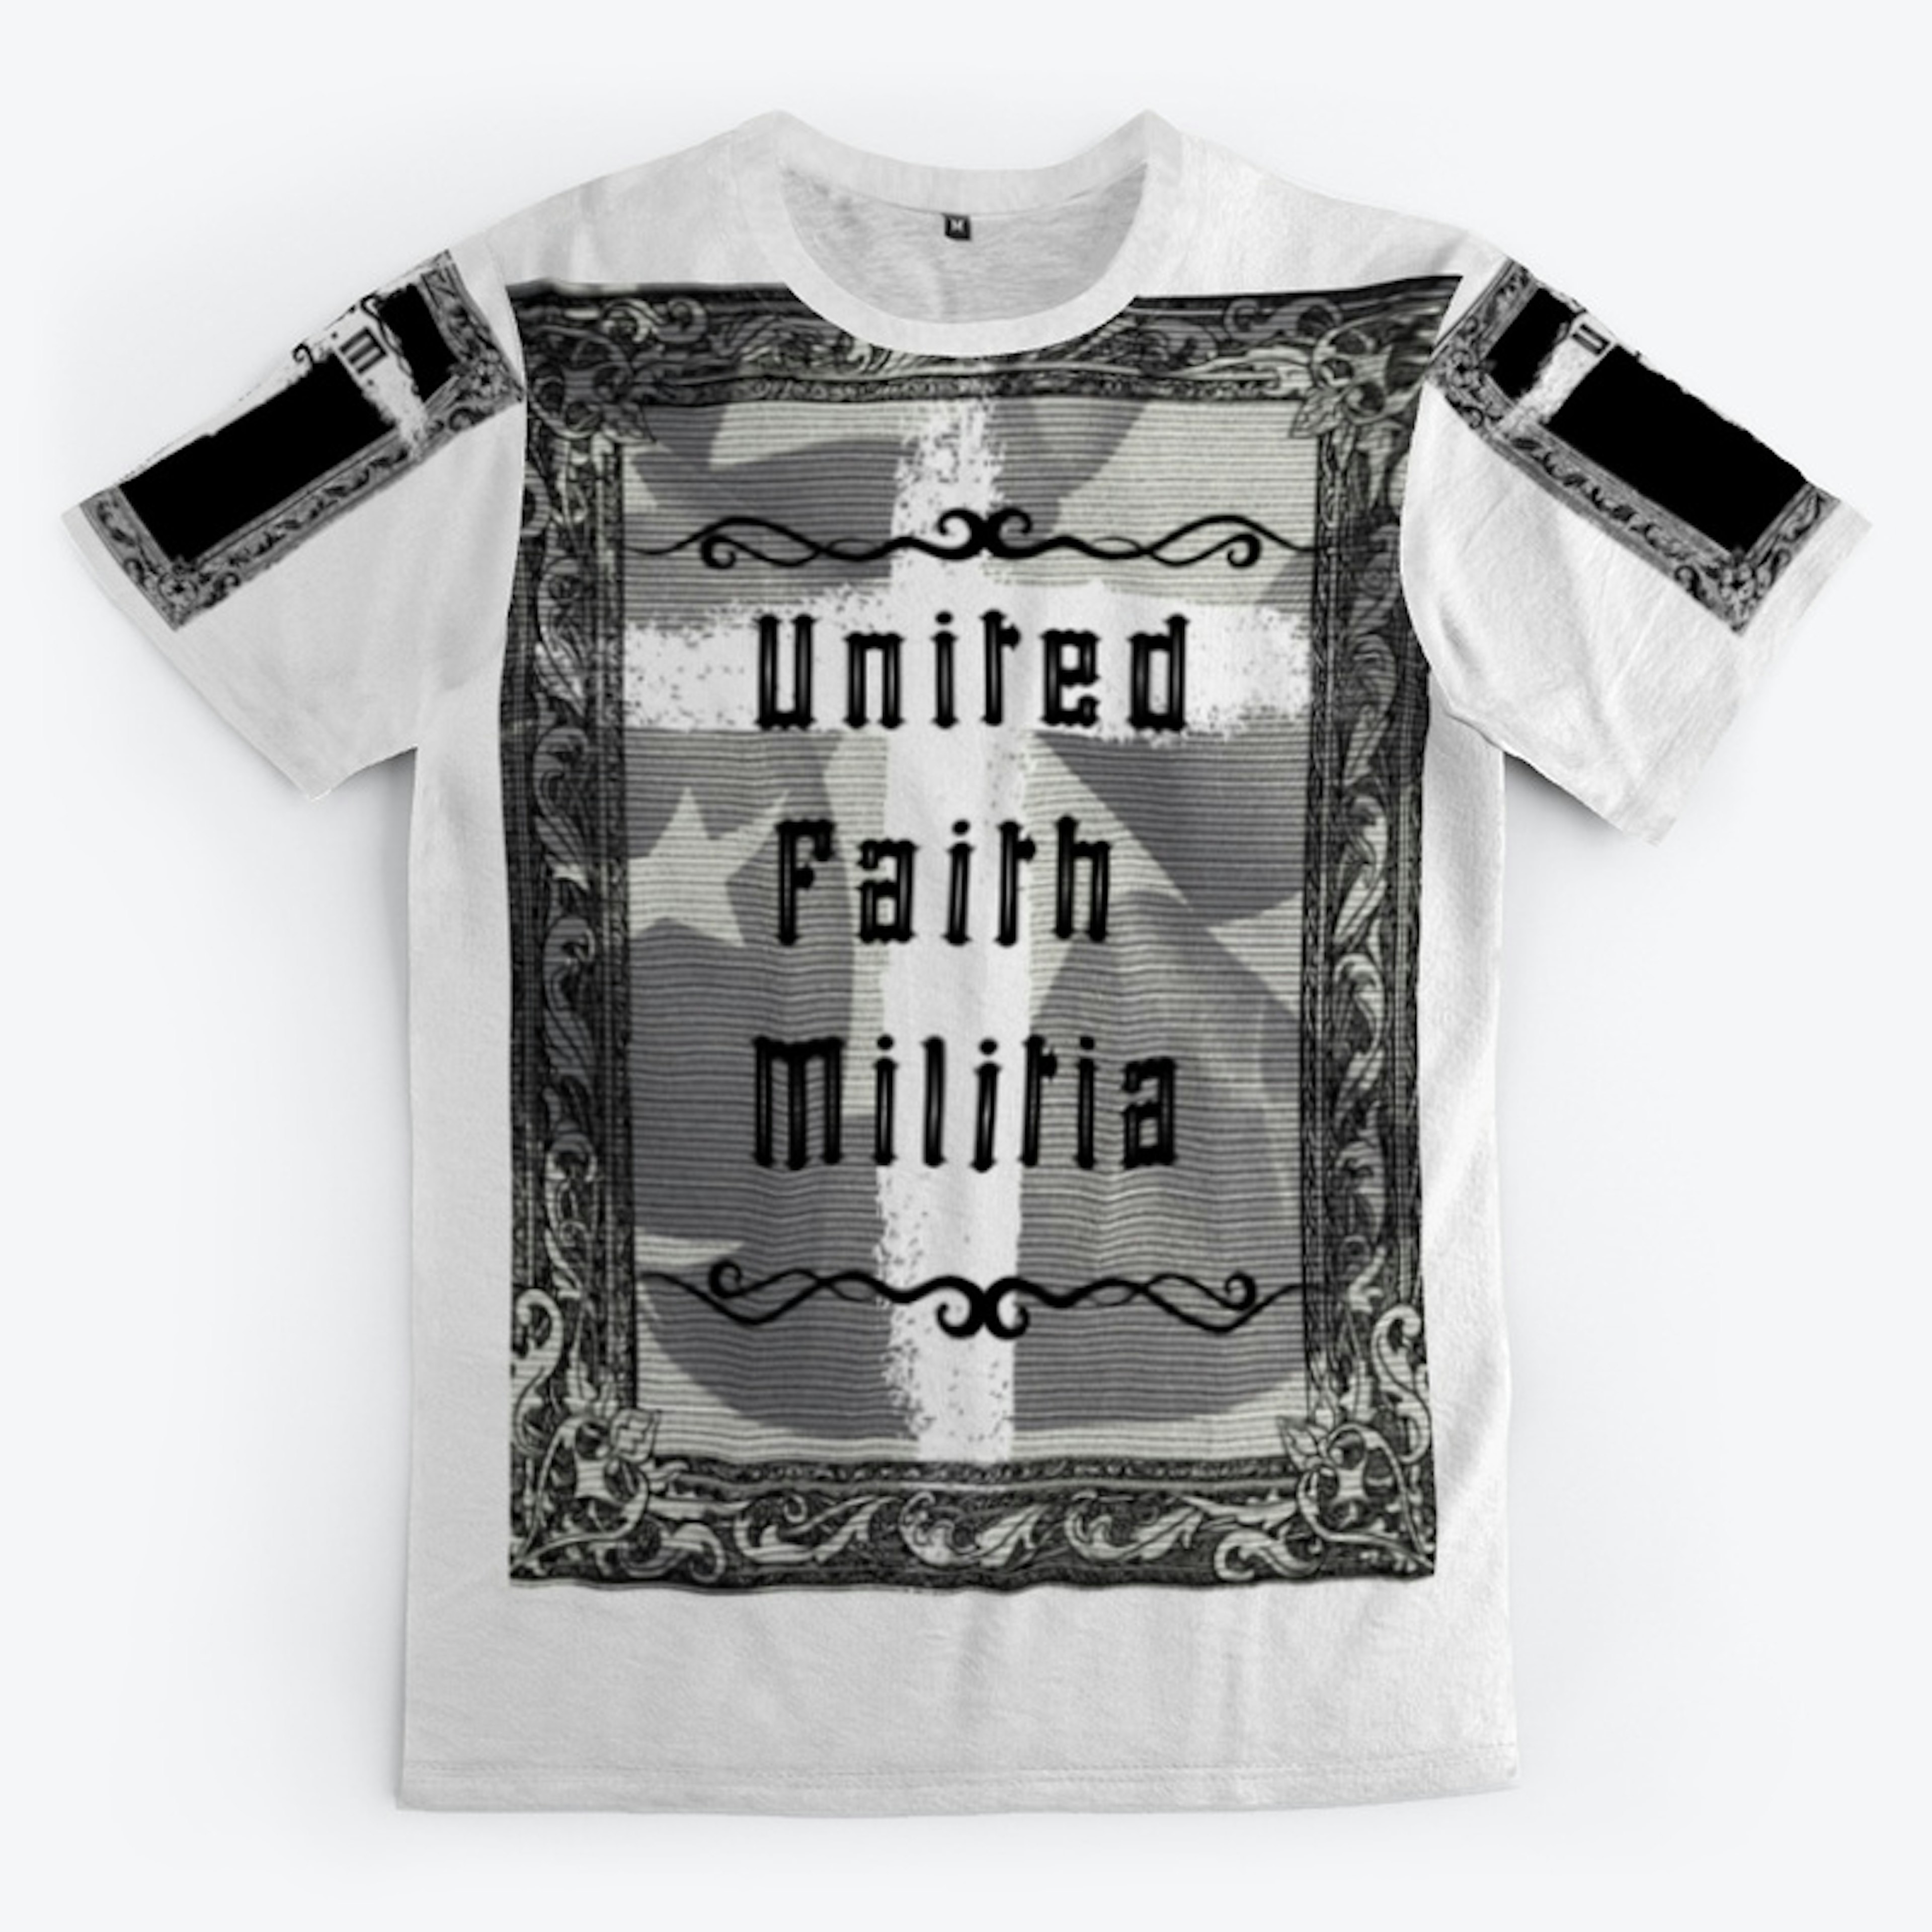 United Faith Militia